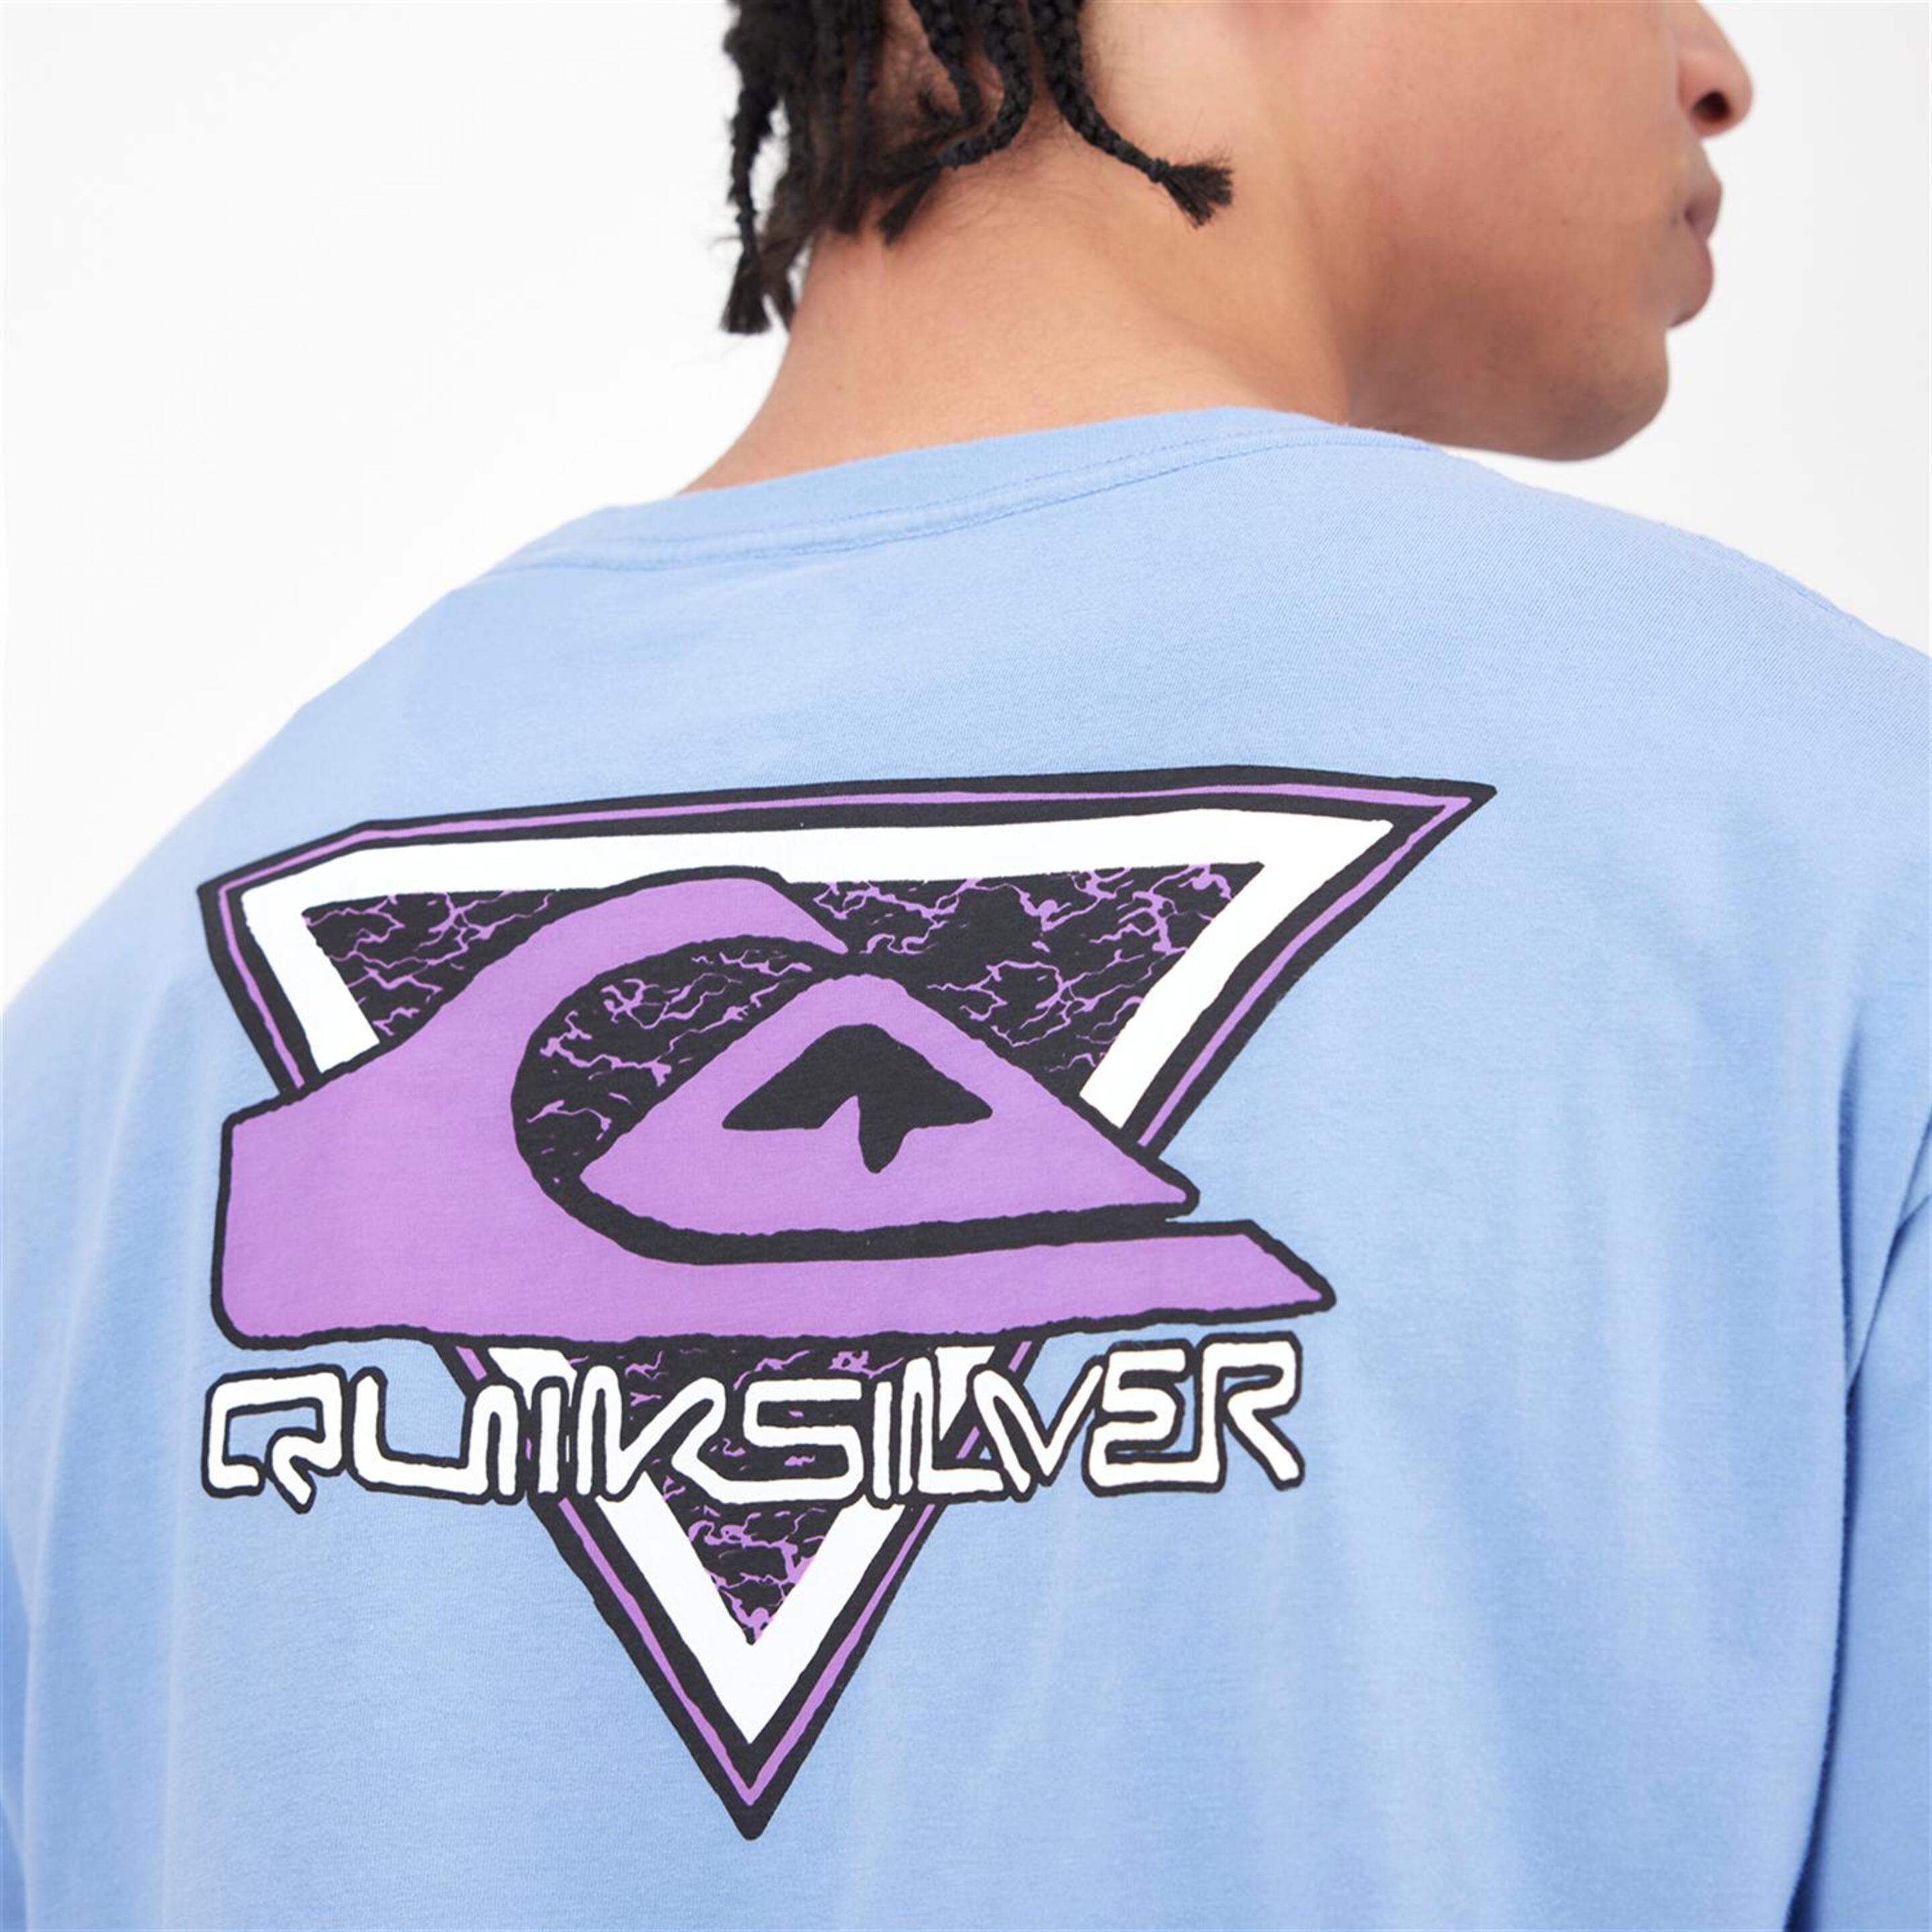 Camiseta Quiksilver - Azul - Camiseta Hombre